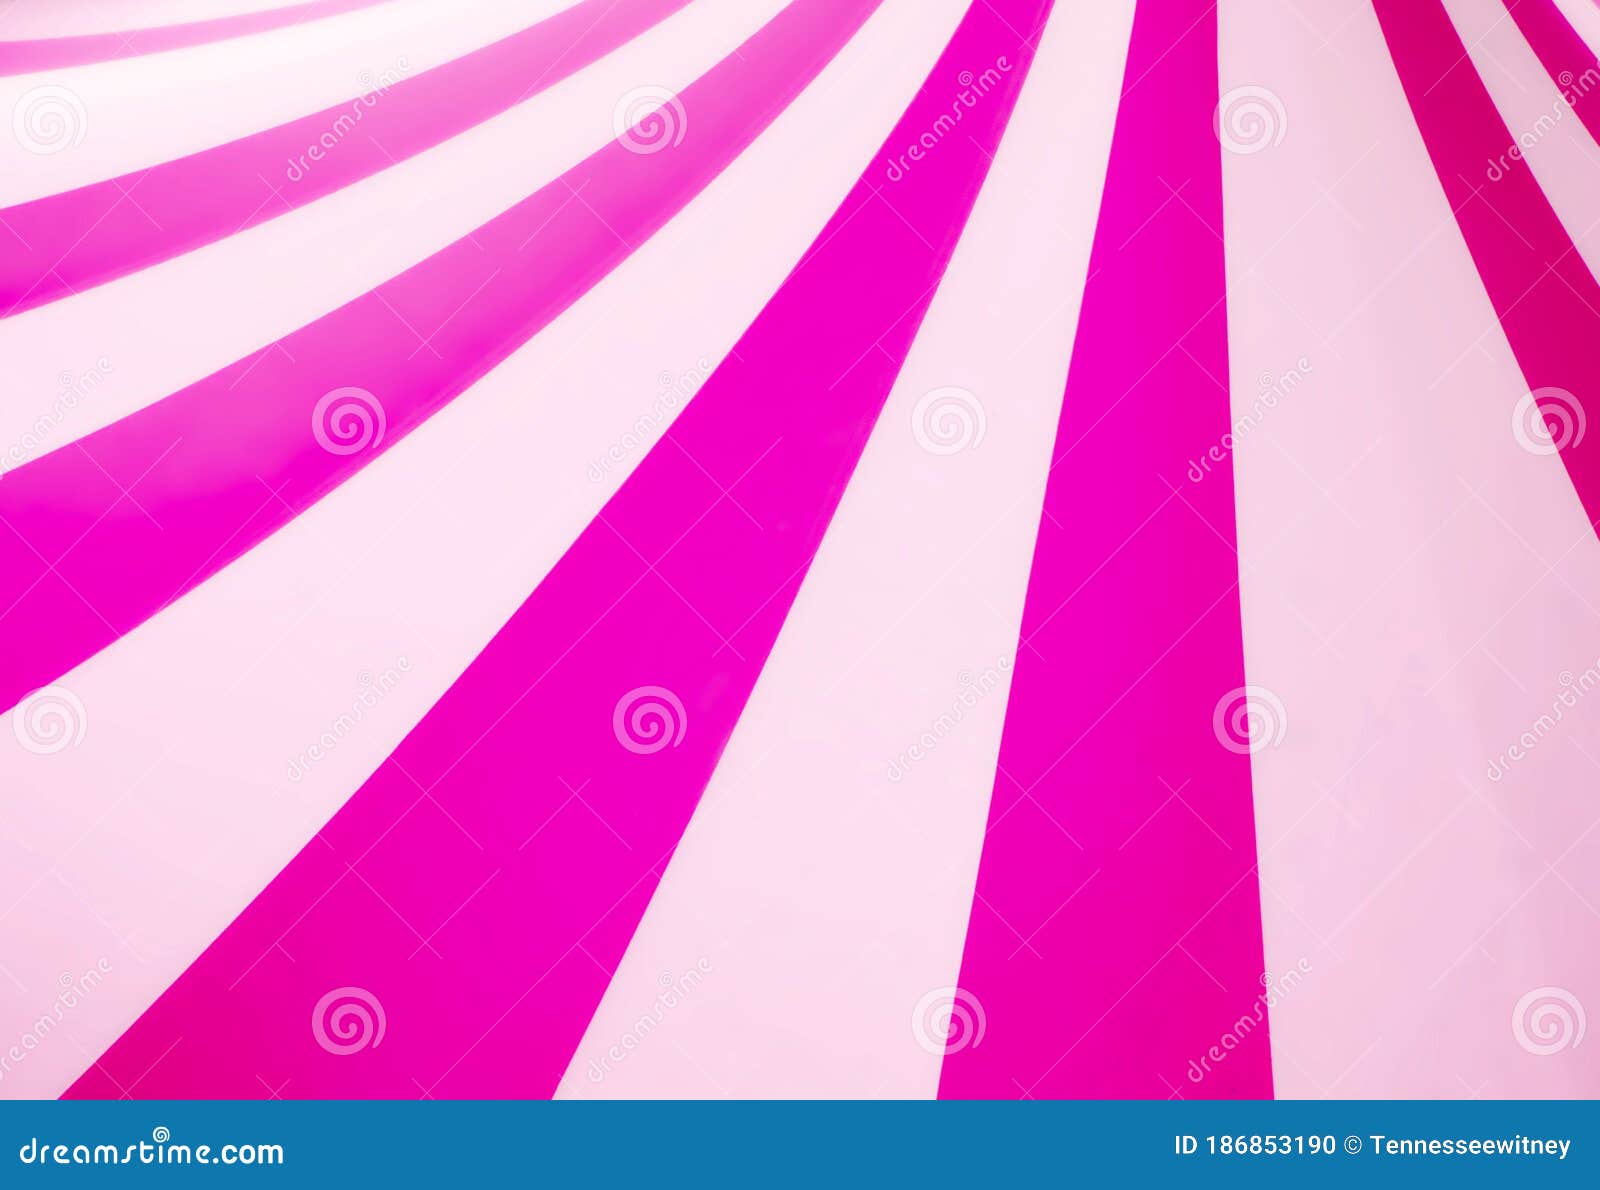 Marco de rayas blancas de corona de princesa rosa telón de fondo de  estudio fotográfico personalizado vinilo de 220cm X 150cm 7X5 pies